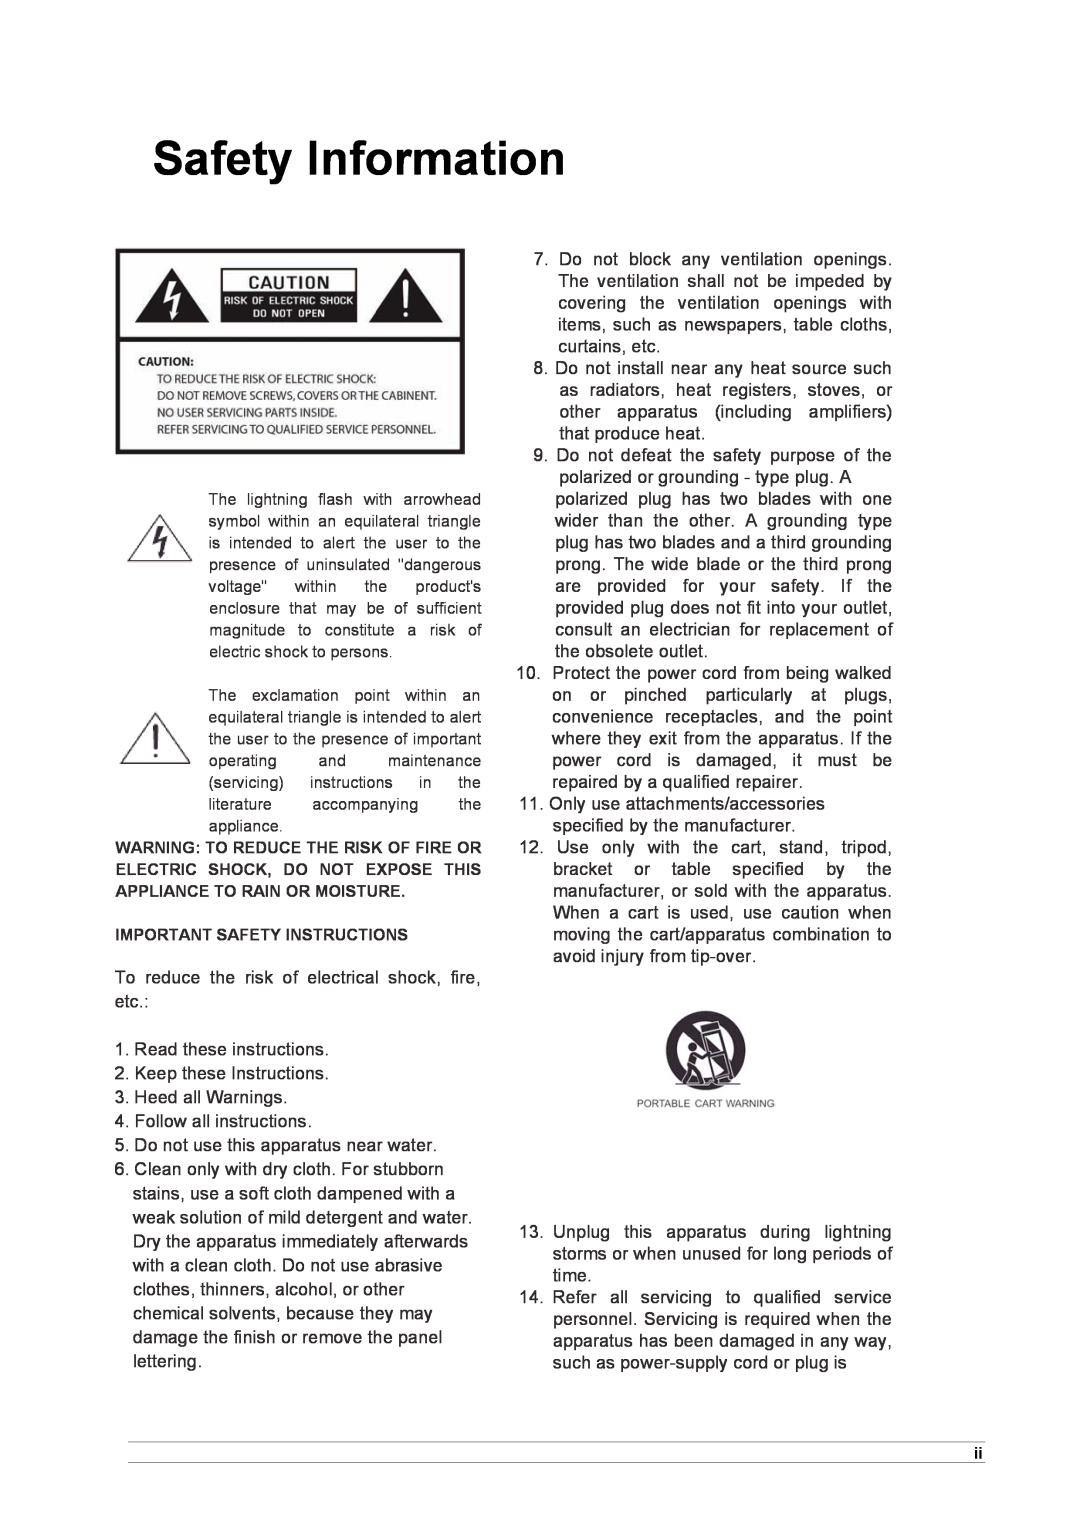 Cobra Electronics CIR 1000 E, CIR 1000 A manual Safety Information 